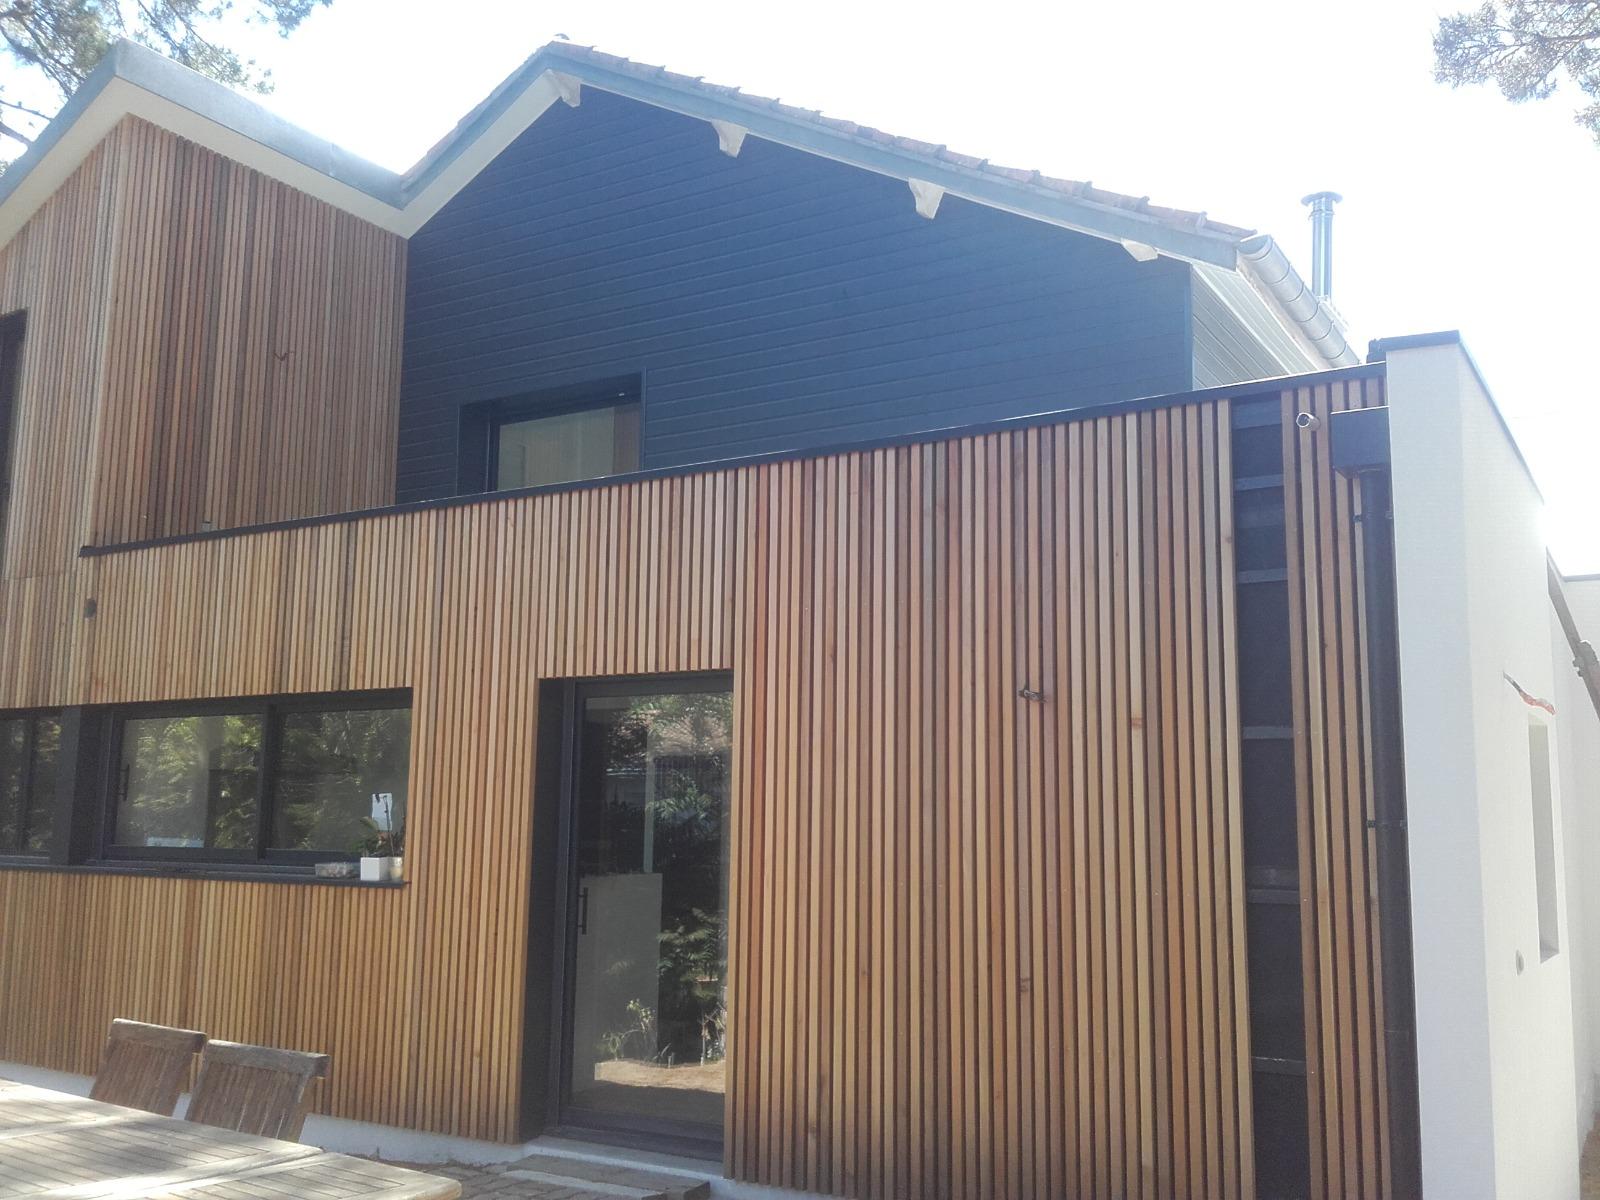 La Baule - Rénovation couverture existante en tuiles et extension étanchéité toit terrasse en membrane PVC